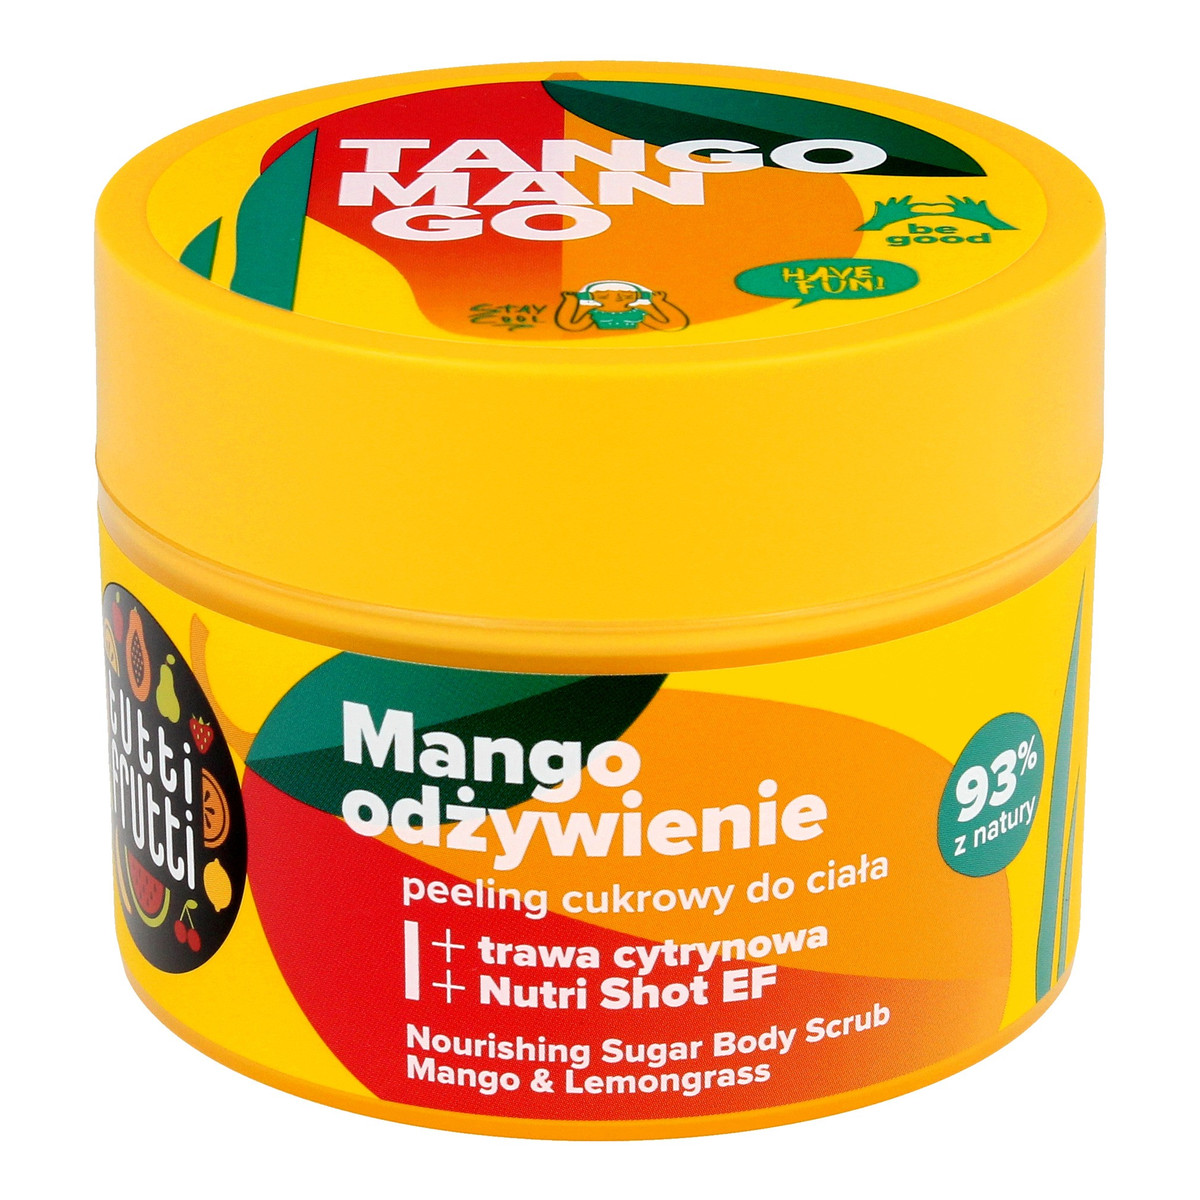 Farmona Tutti Frutti Peeling cukrowy do ciała Mango Odżywienie - Mango&Trawa Cytrynowa 300g